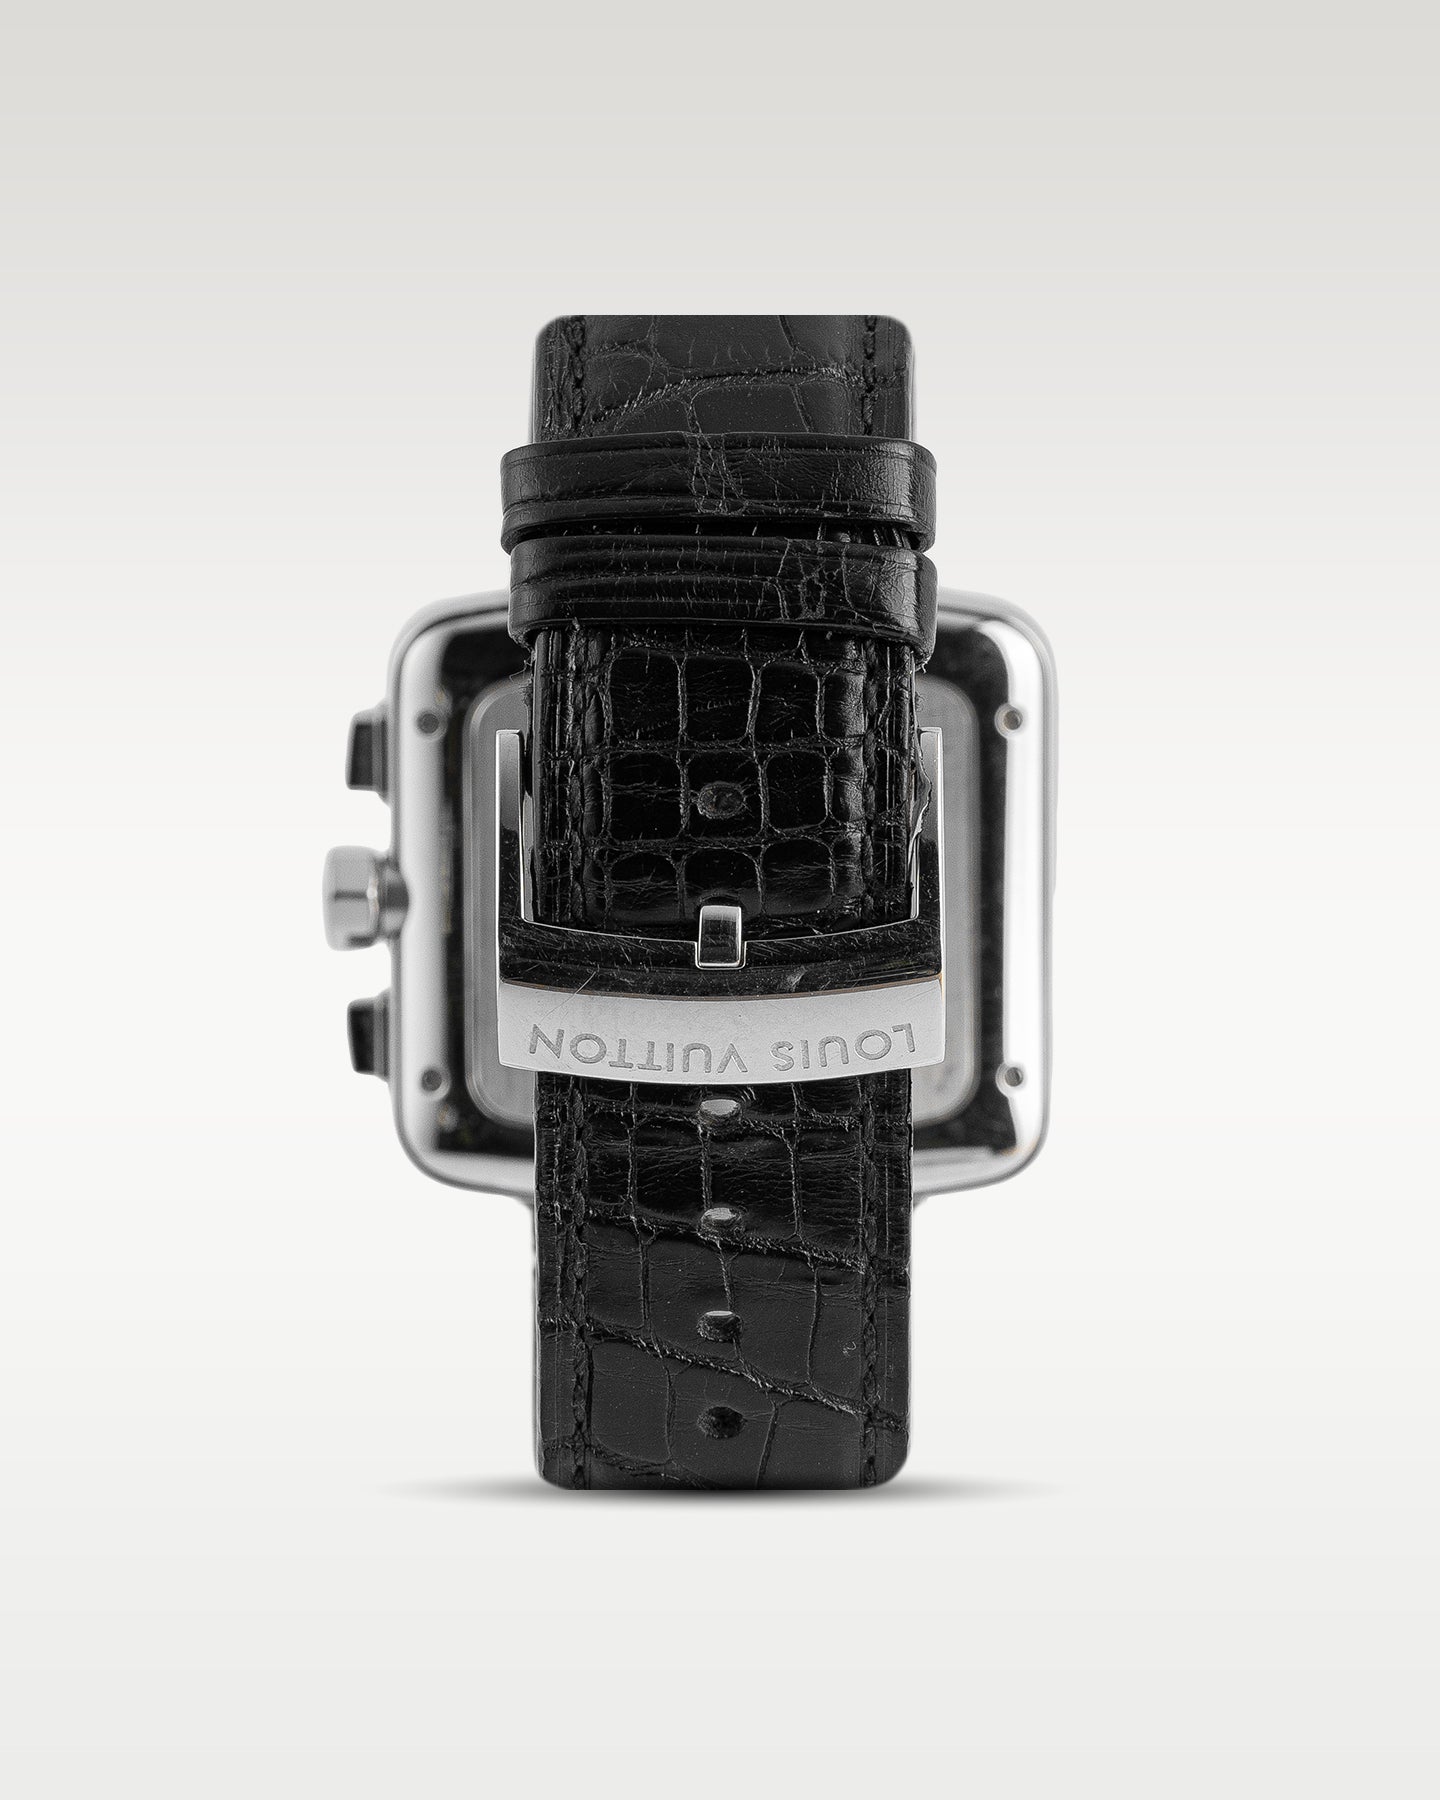 Louis Vuitton Speedy Chronograph Q212G1